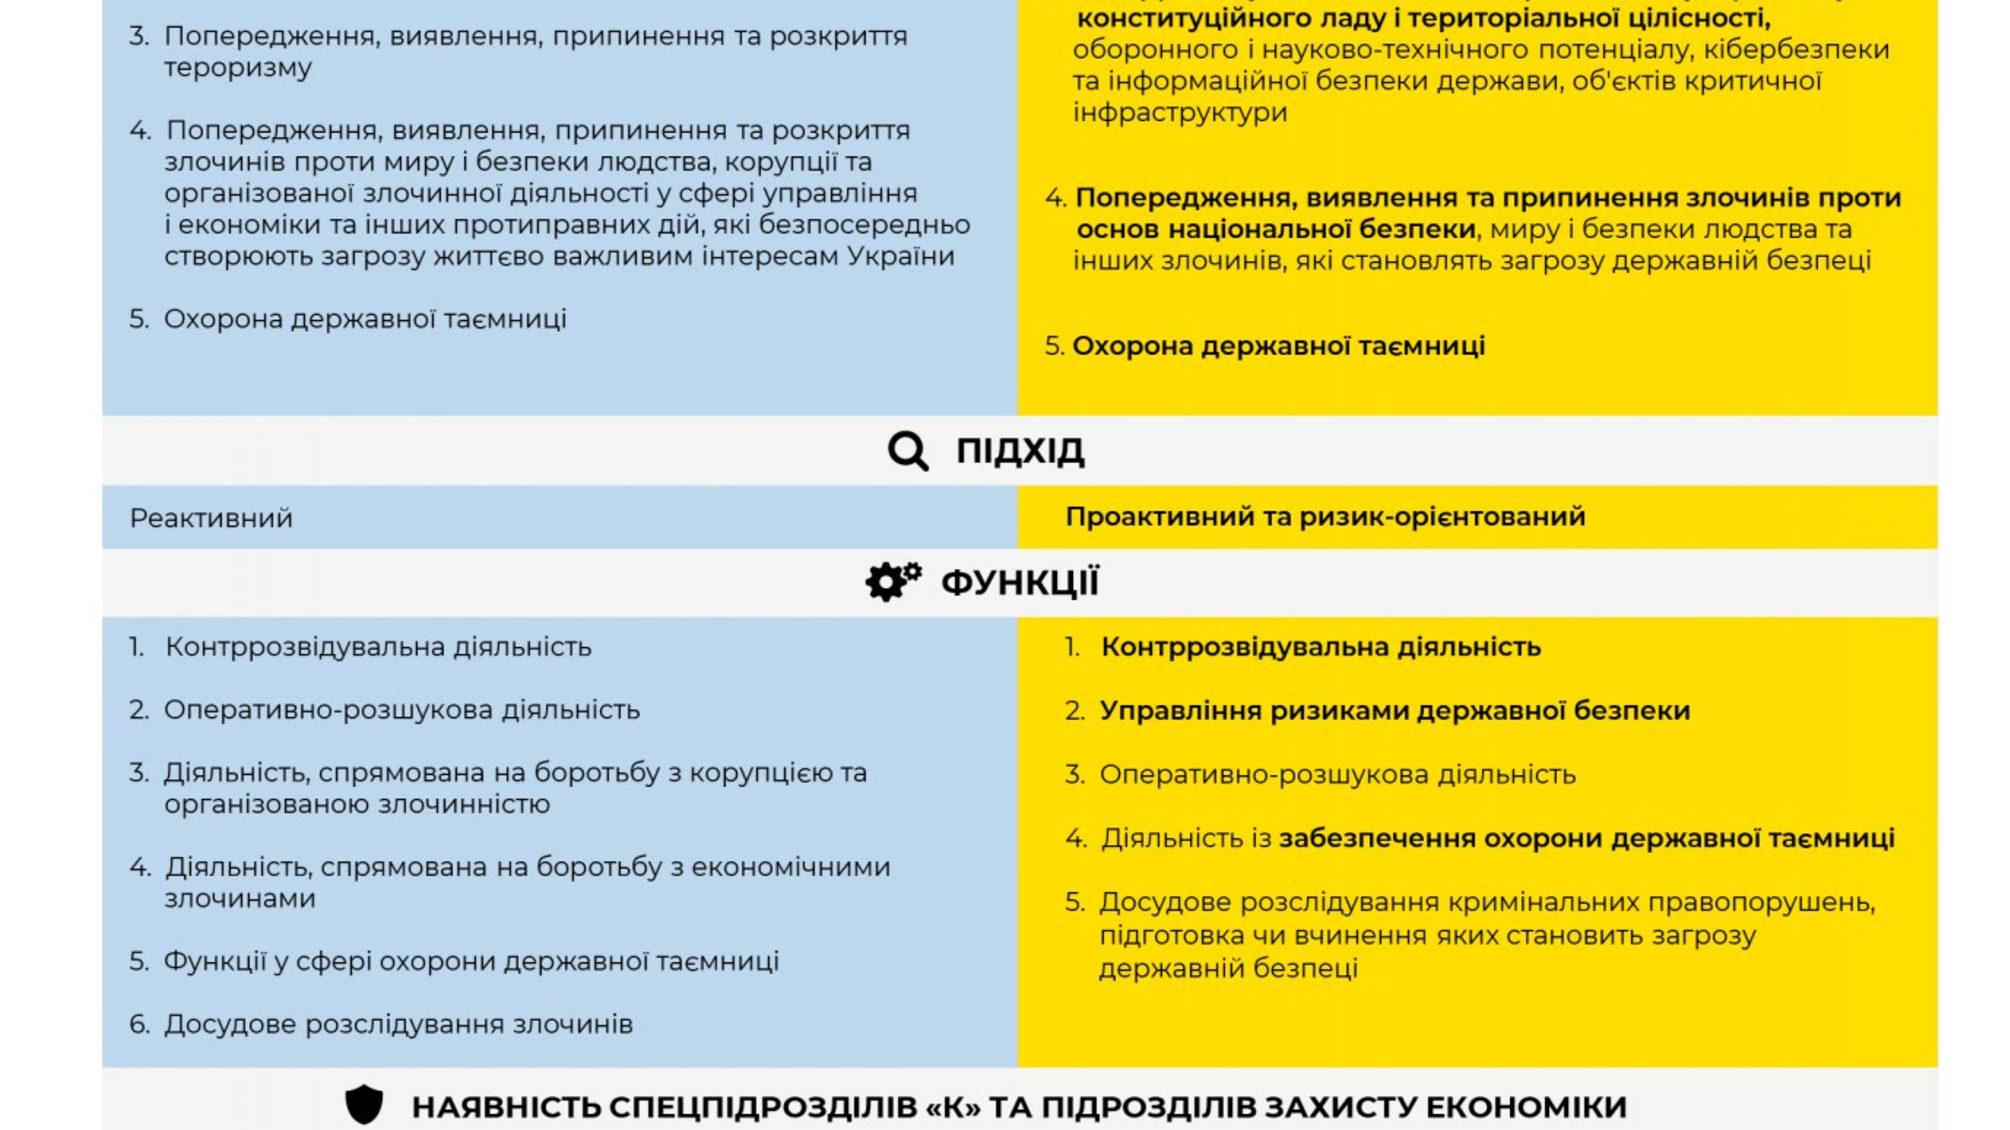 Новий закон «Про Службу безпеки України» дозволить спецслужбі перейти на якісно новий рівень у роботі - Іван Баканов